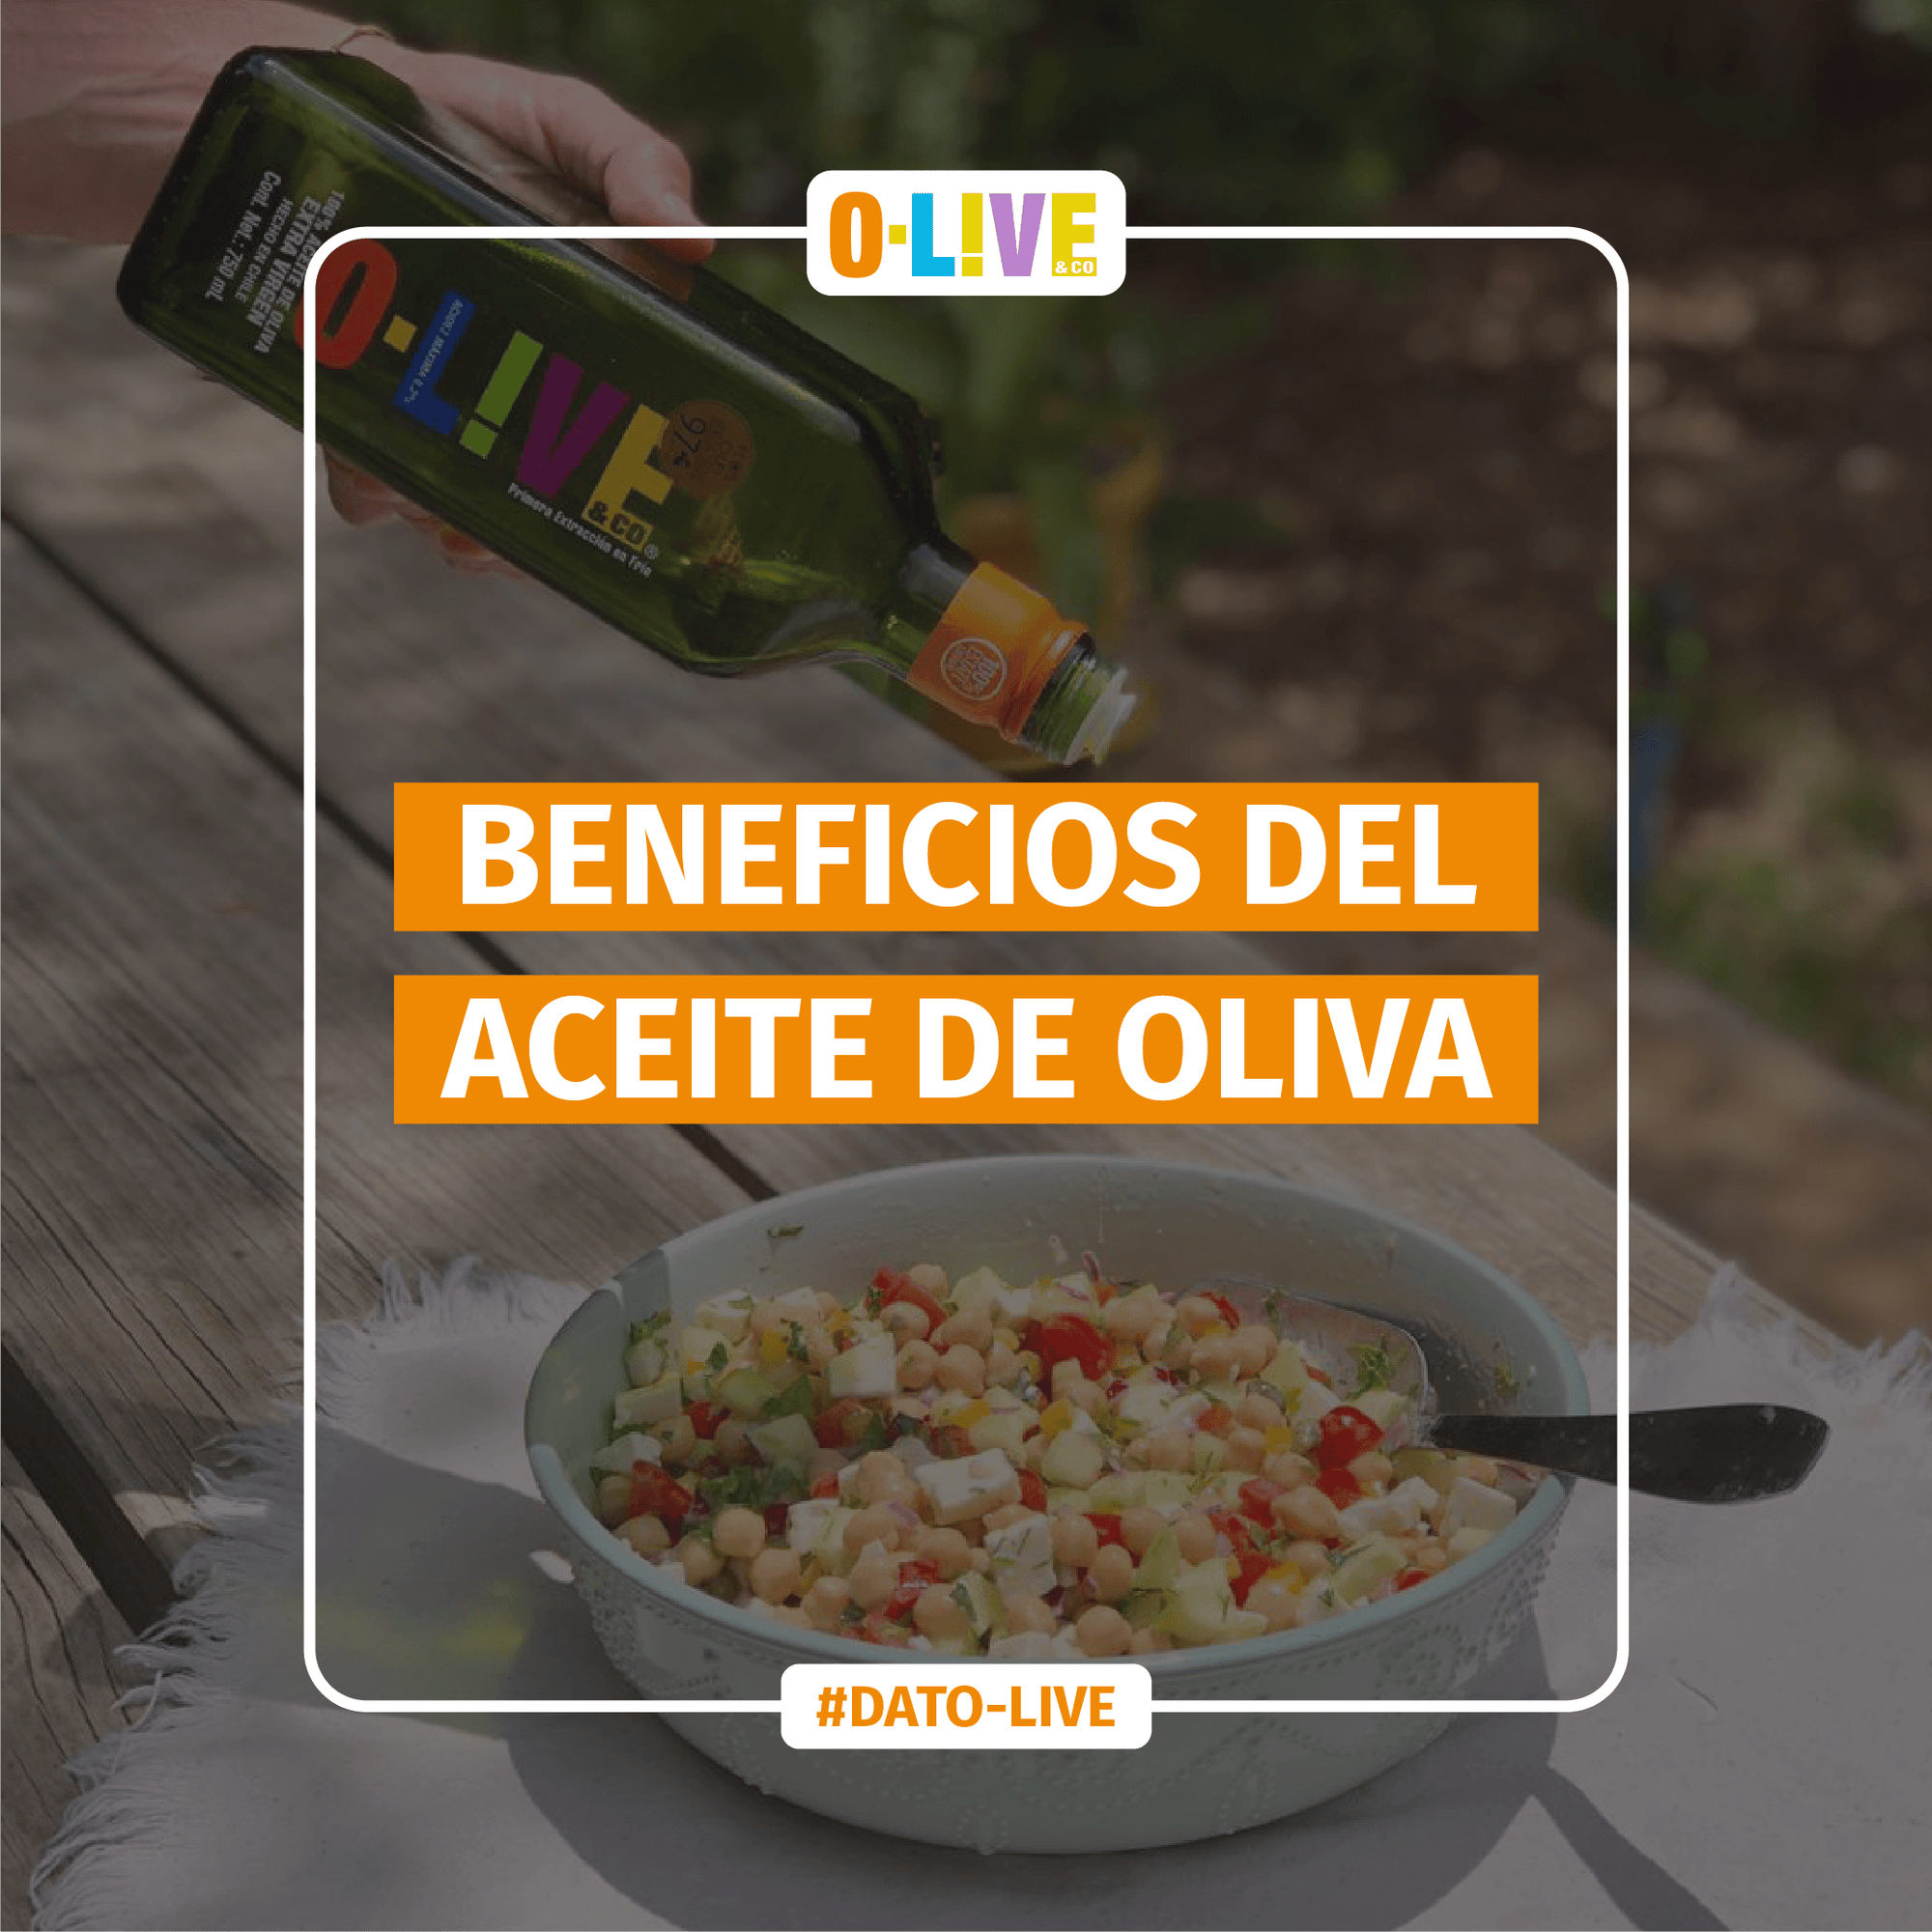 Portada de Dato O-Live que muestra el texto: "Beneficios del aceite de oliva".